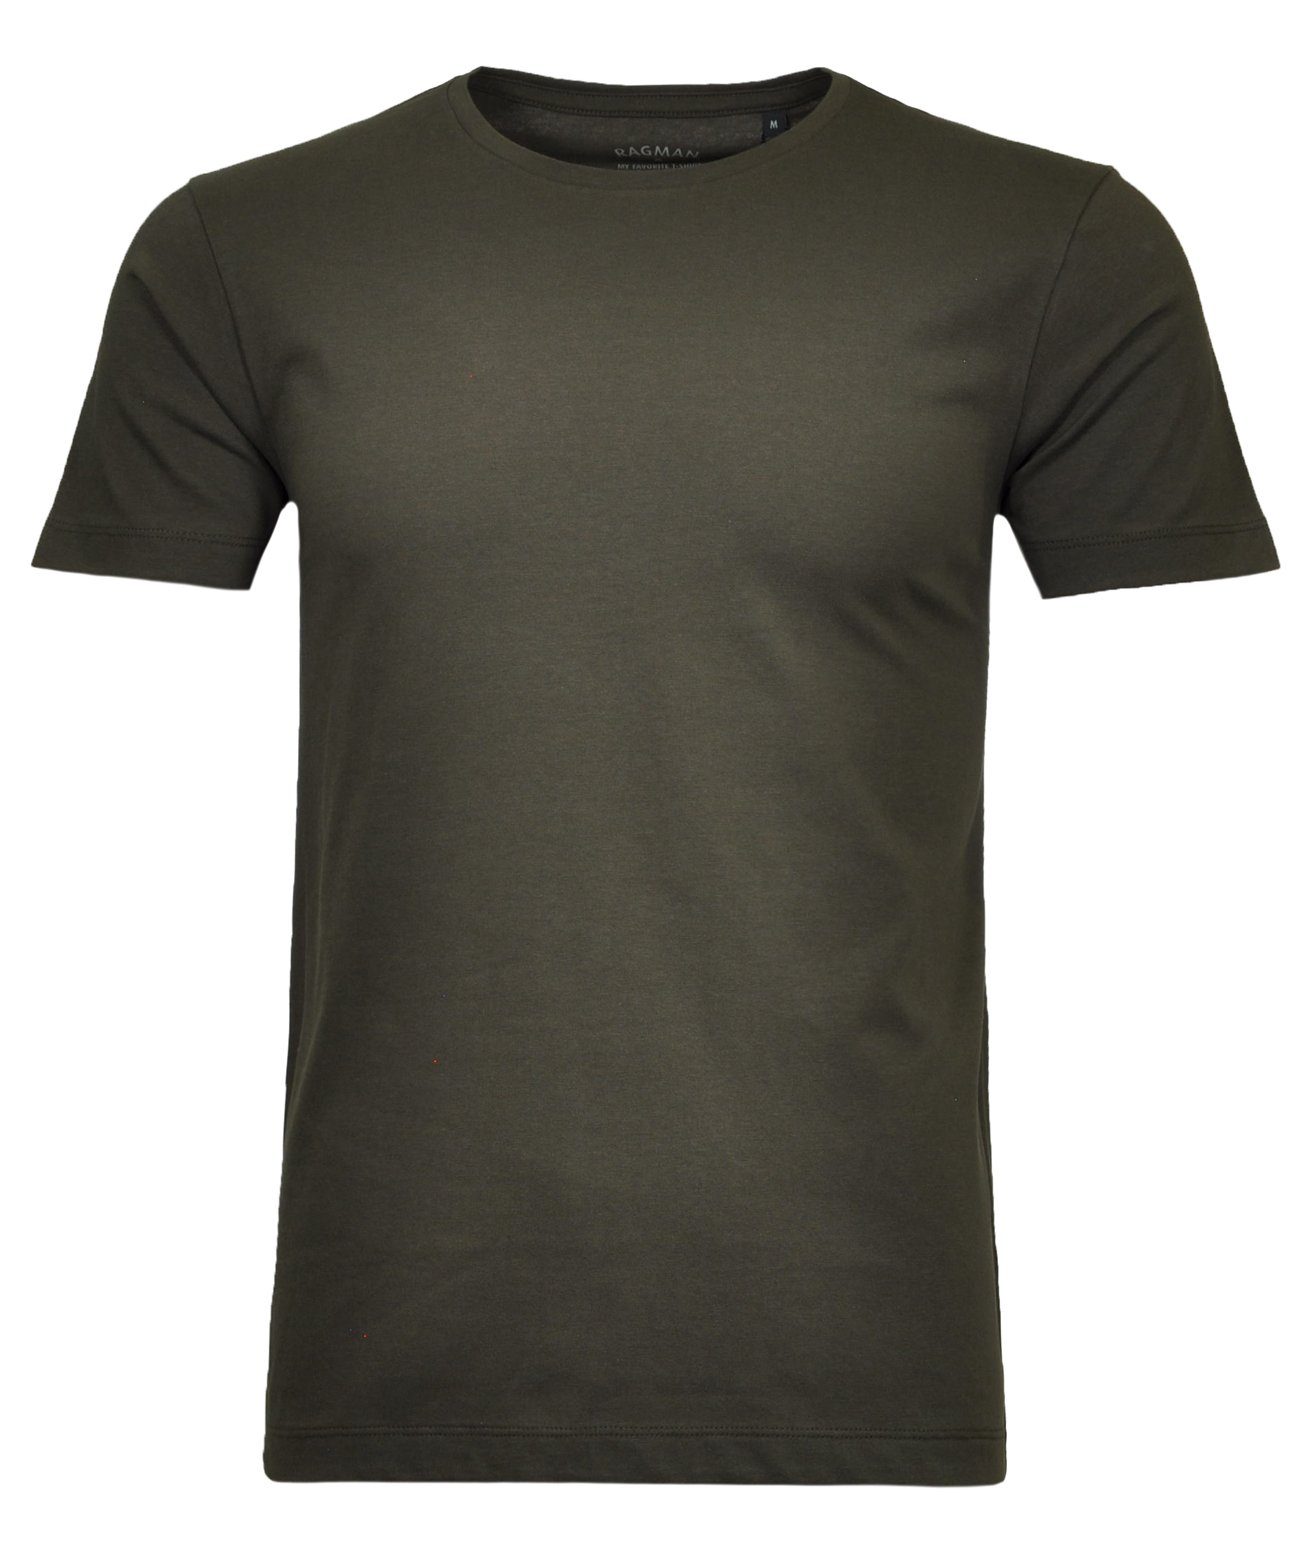 RAGMAN T-Shirt Khaki-308